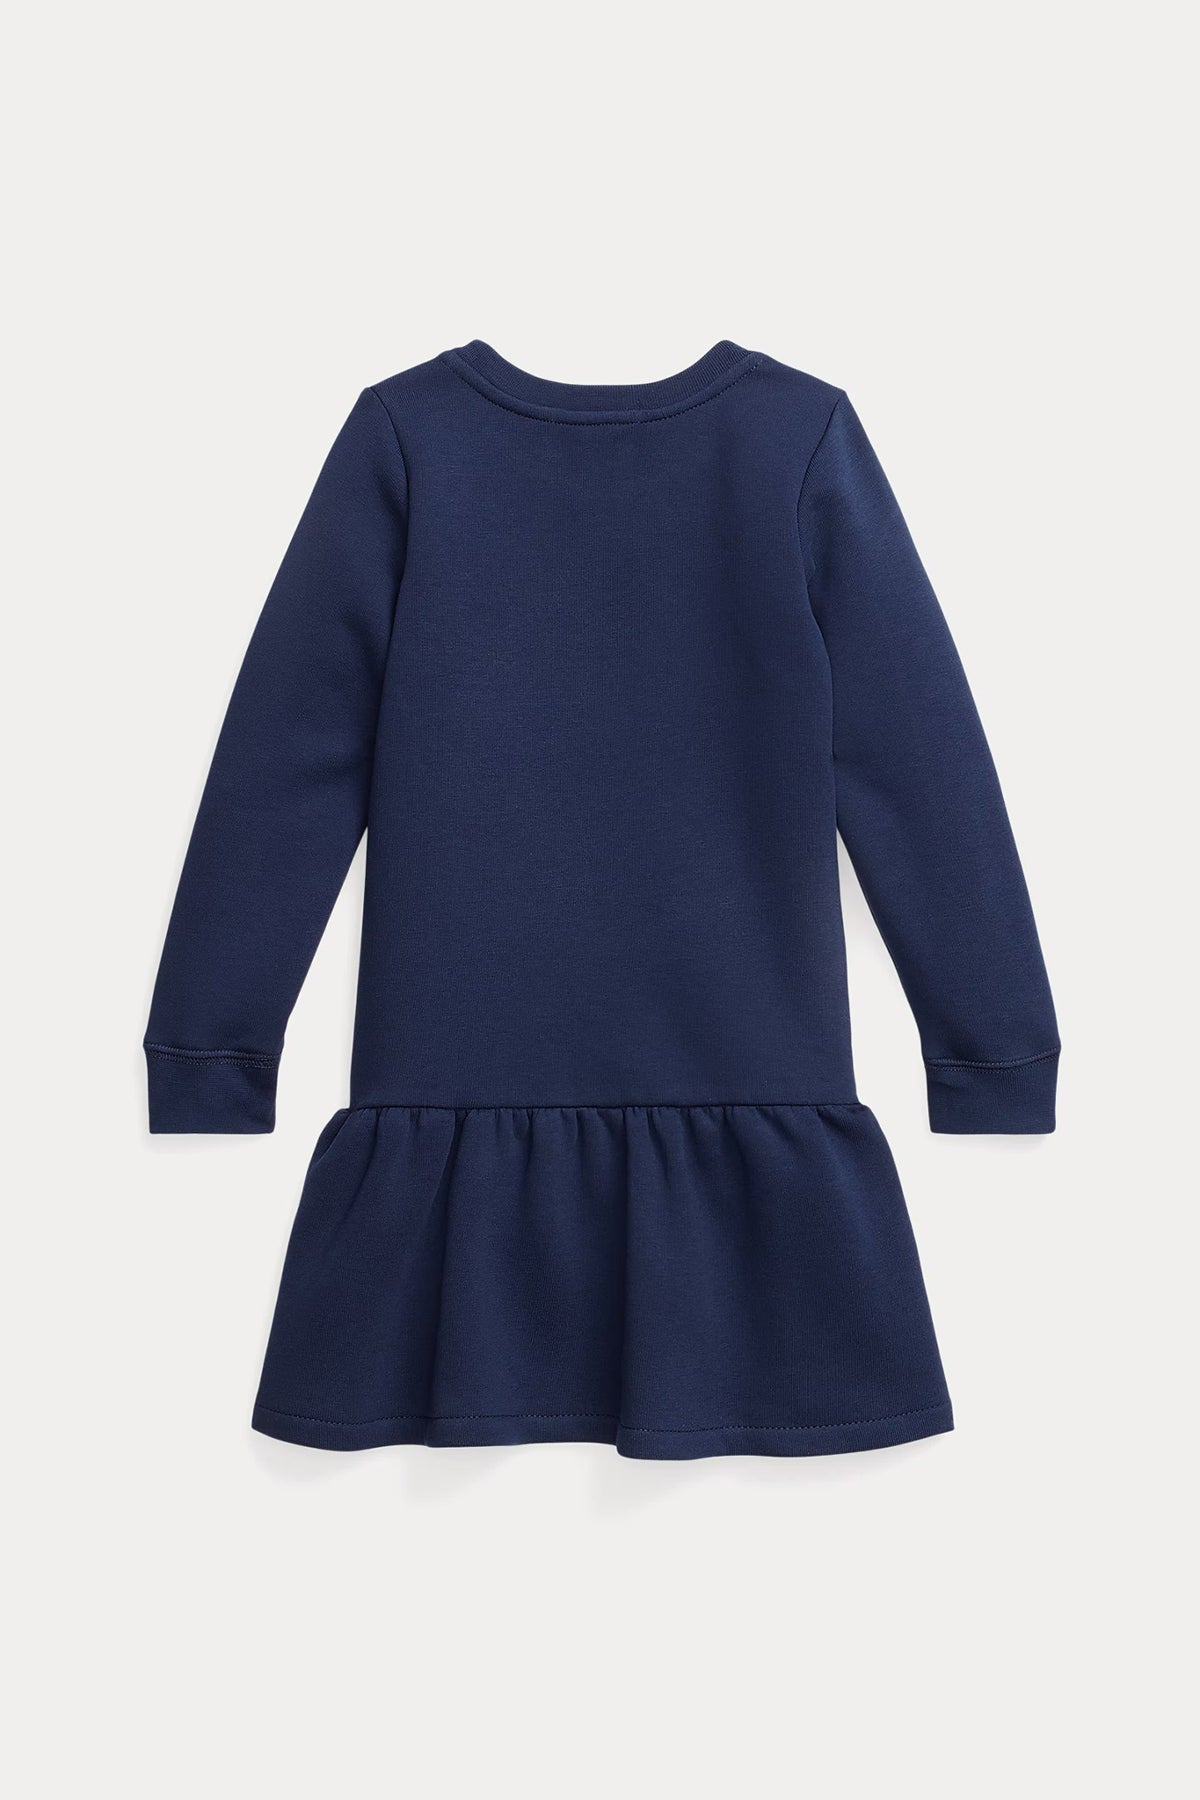 Polo Ralph Lauren Kids 2-4 Yaş Kız Çocuk Polo Bear Sweatshirt Elbise